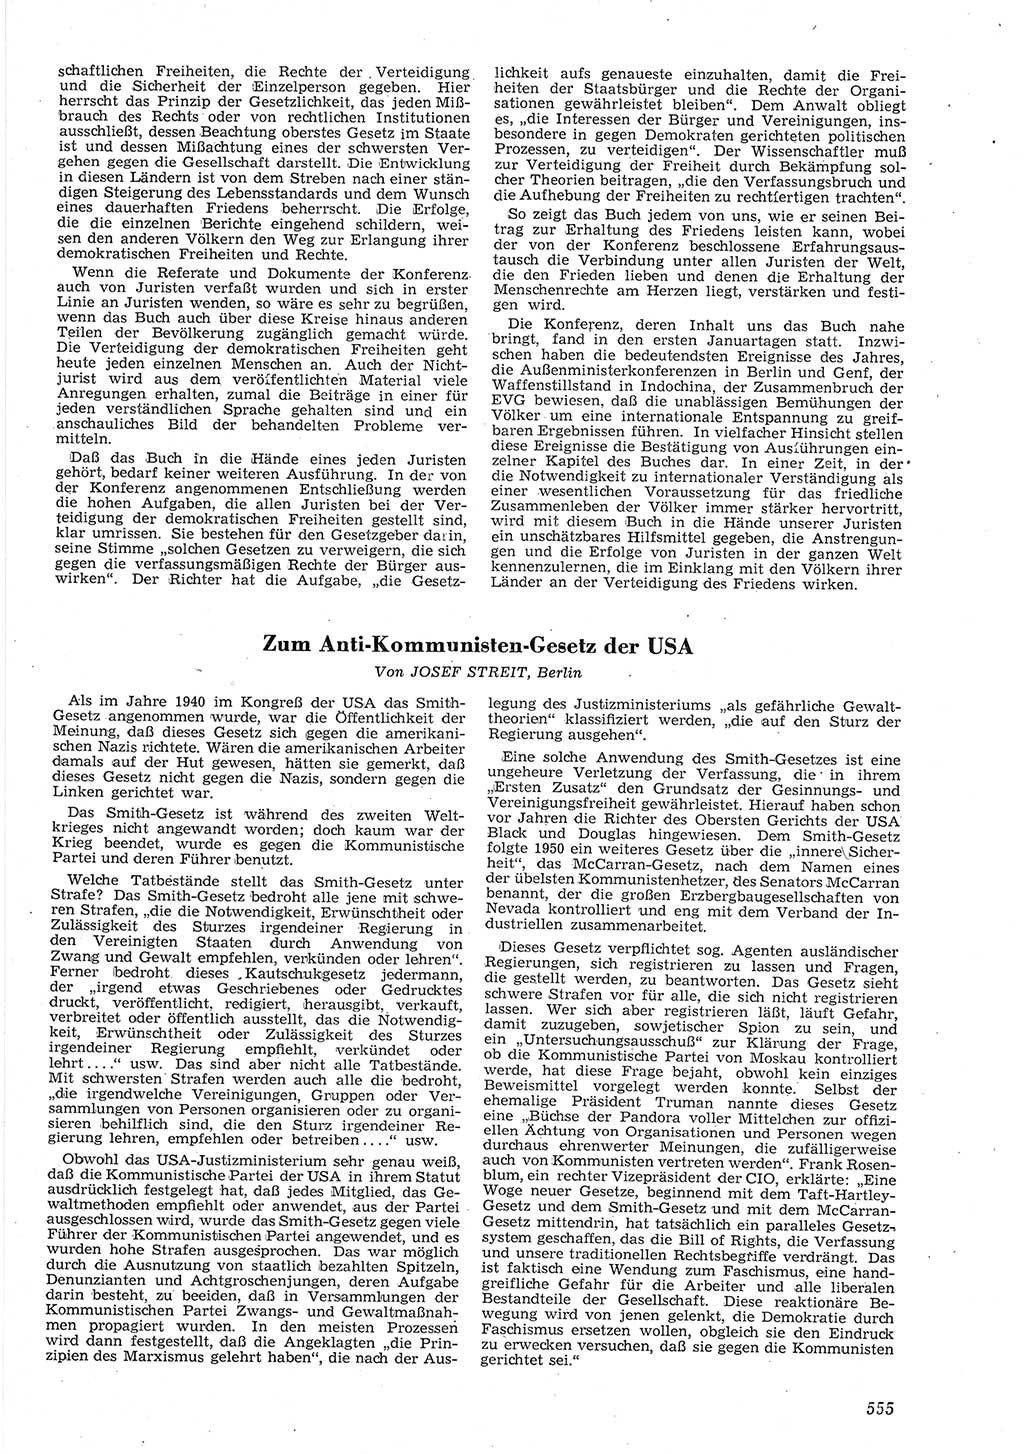 Neue Justiz (NJ), Zeitschrift für Recht und Rechtswissenschaft [Deutsche Demokratische Republik (DDR)], 8. Jahrgang 1954, Seite 555 (NJ DDR 1954, S. 555)